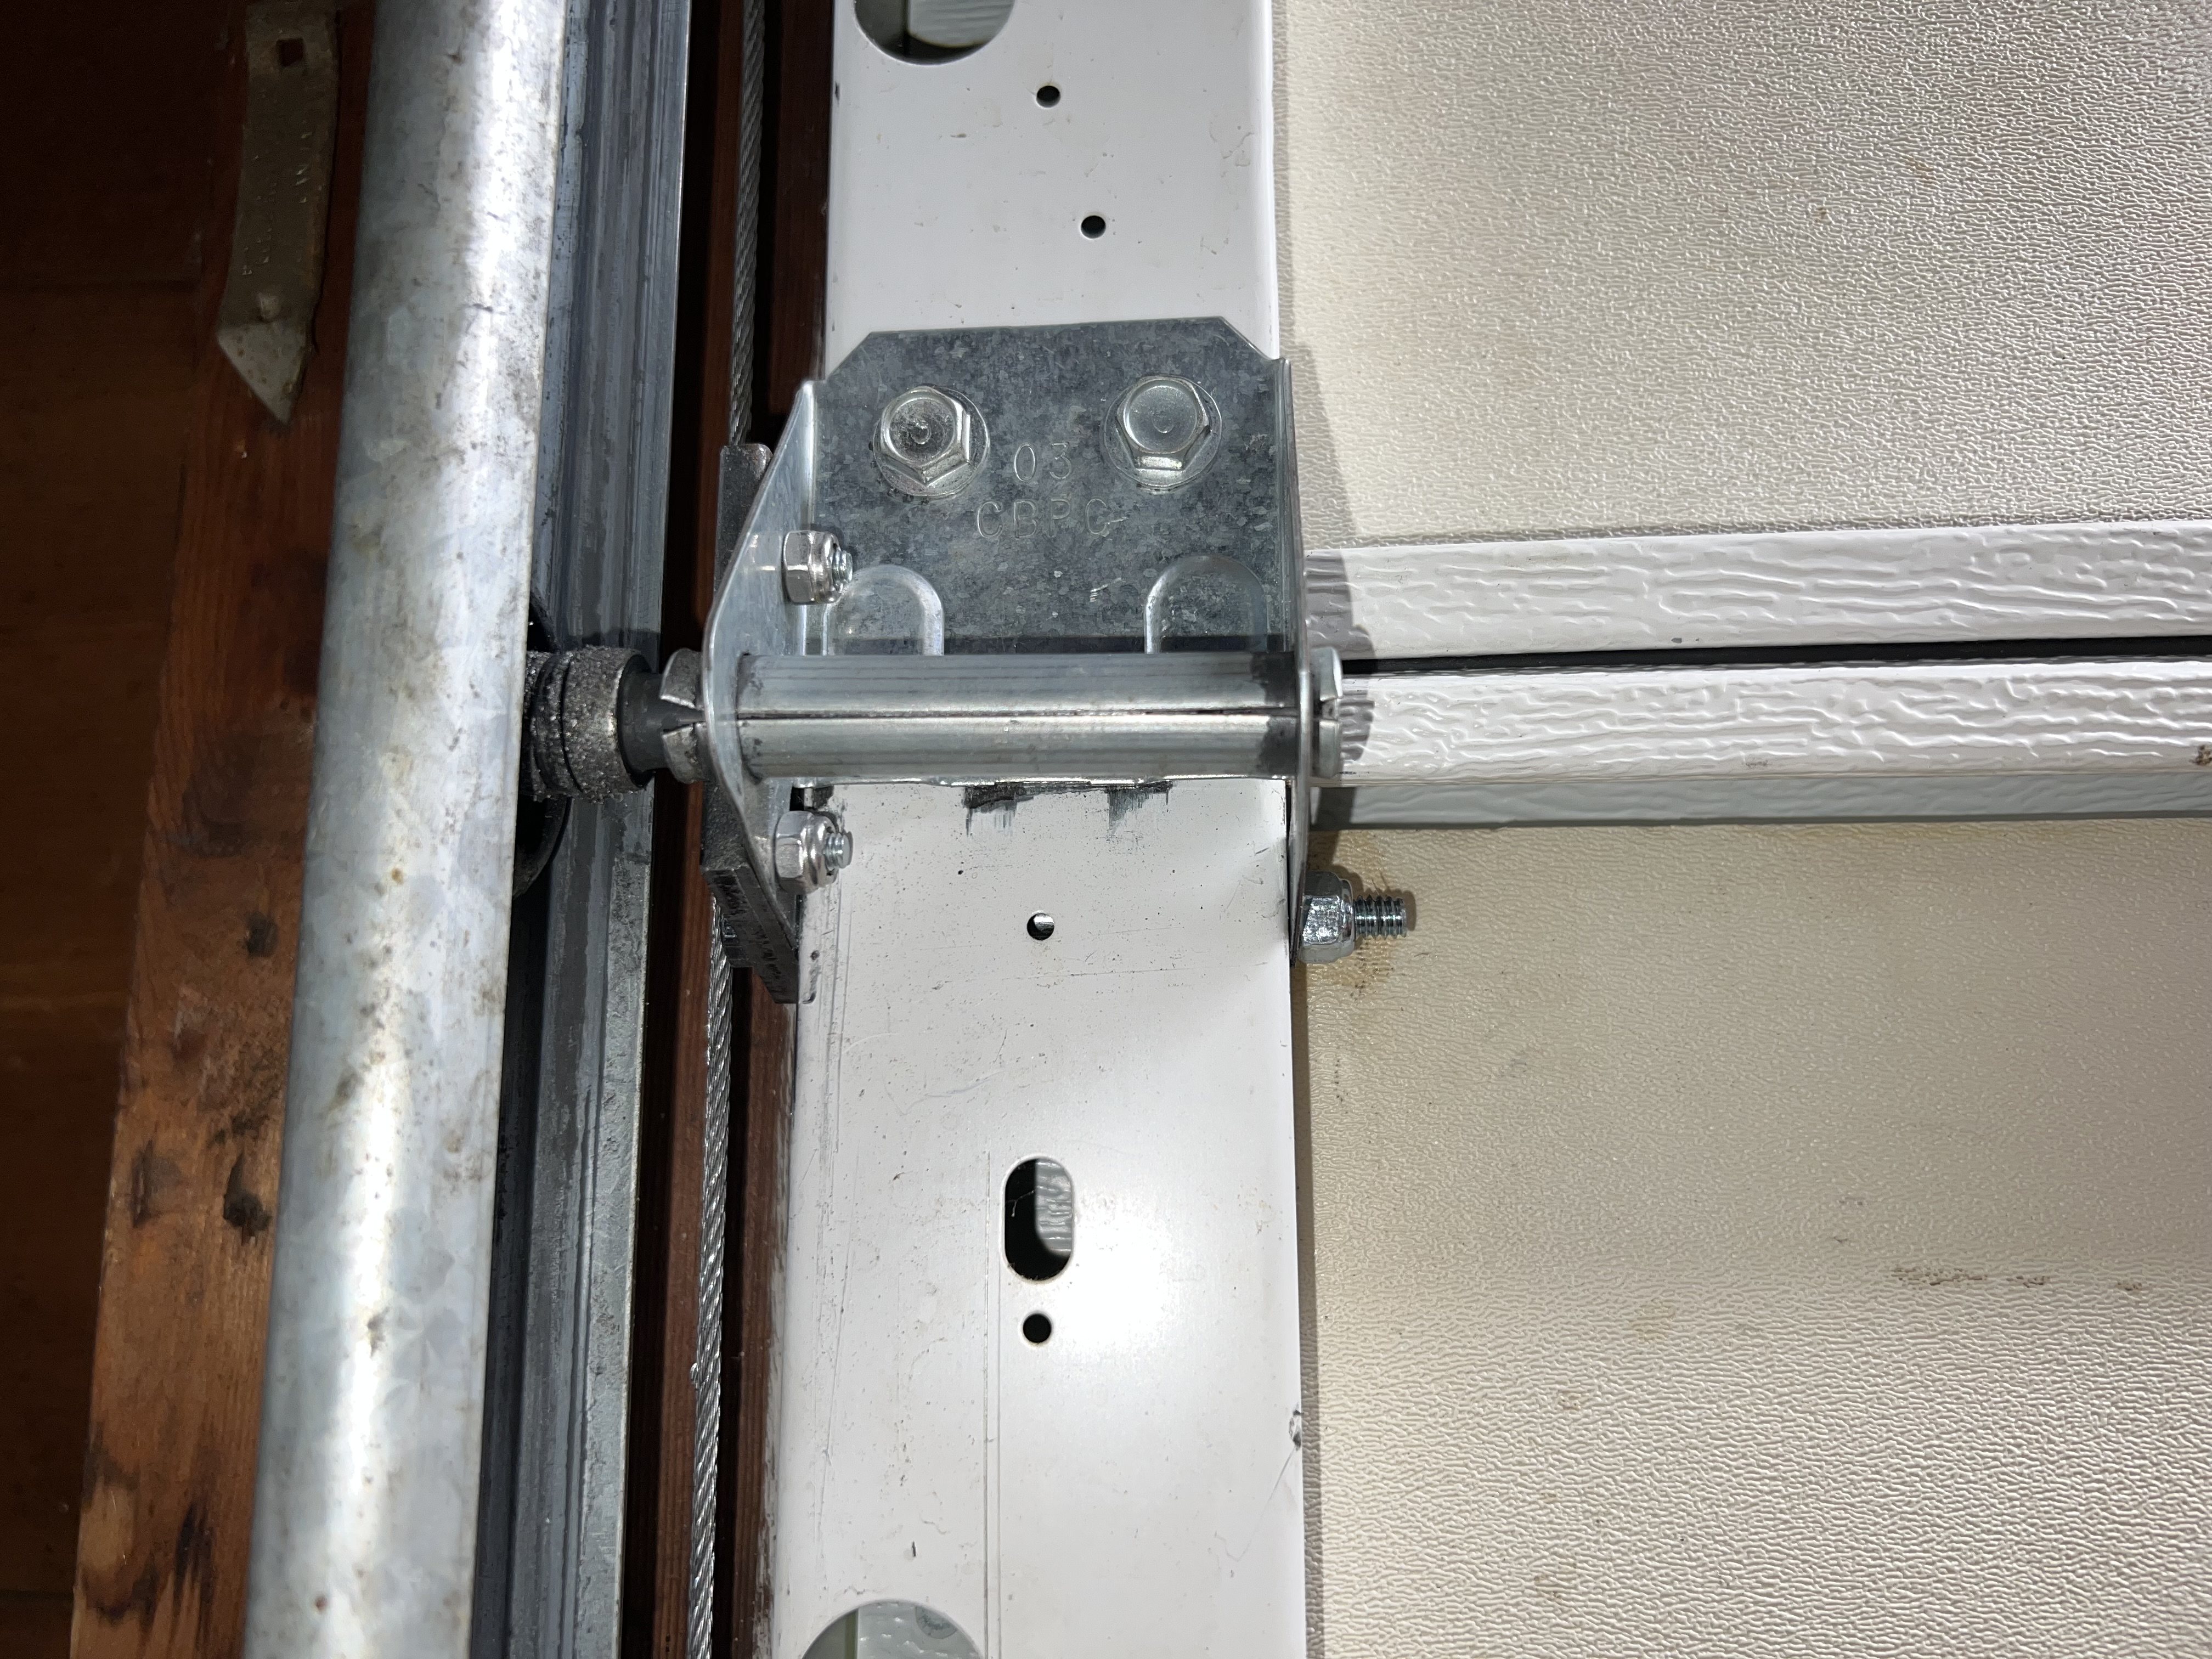 Repaired hinge mounted to door.